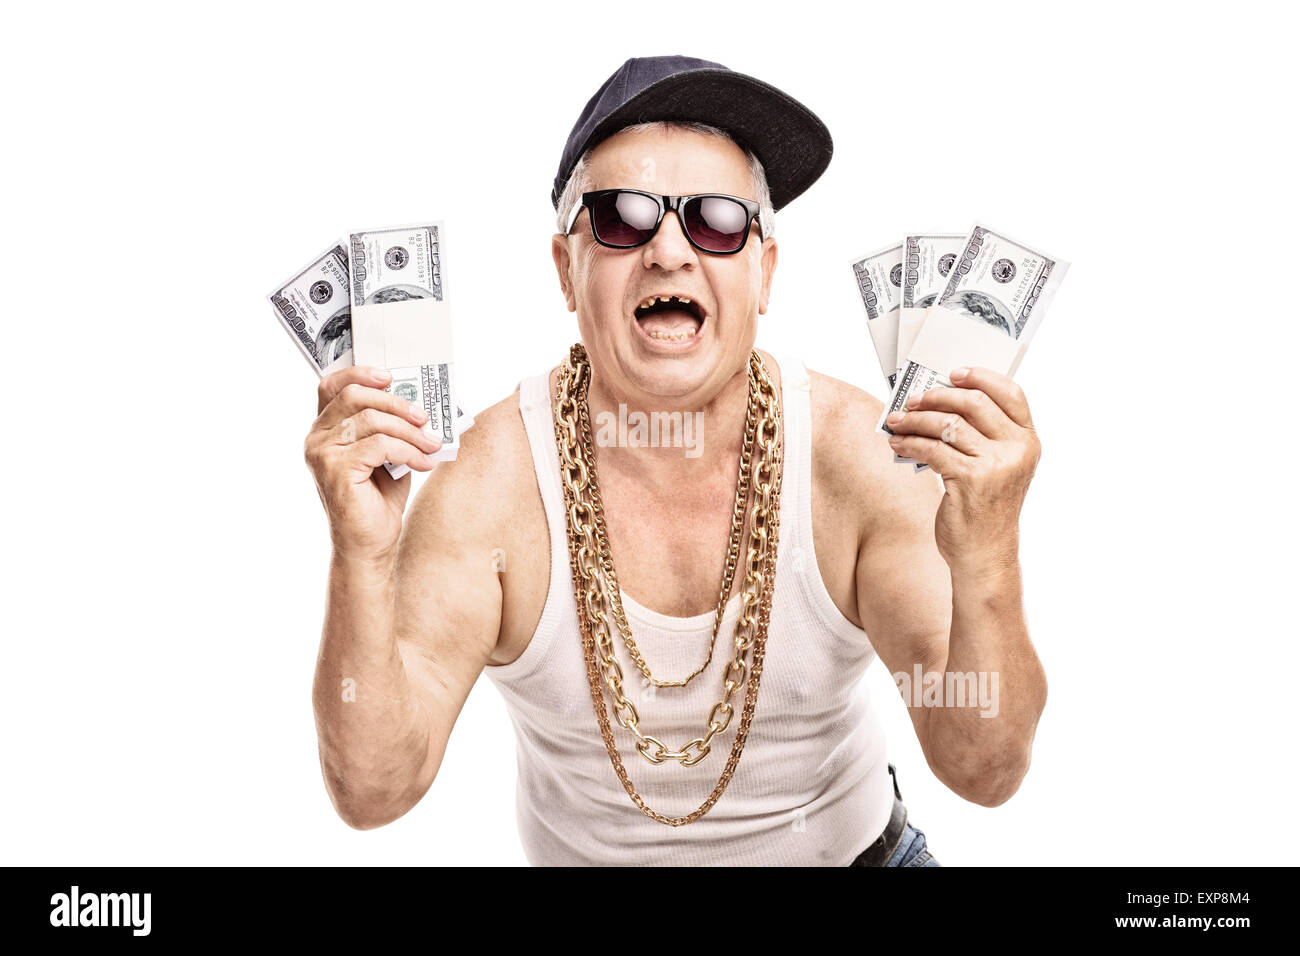 Hocherfreut Senior in hip Hop Klamotten halten ein paar Stapel von Geld und schaut in die Kamera, die isoliert auf weißem Hintergrund Stockfoto